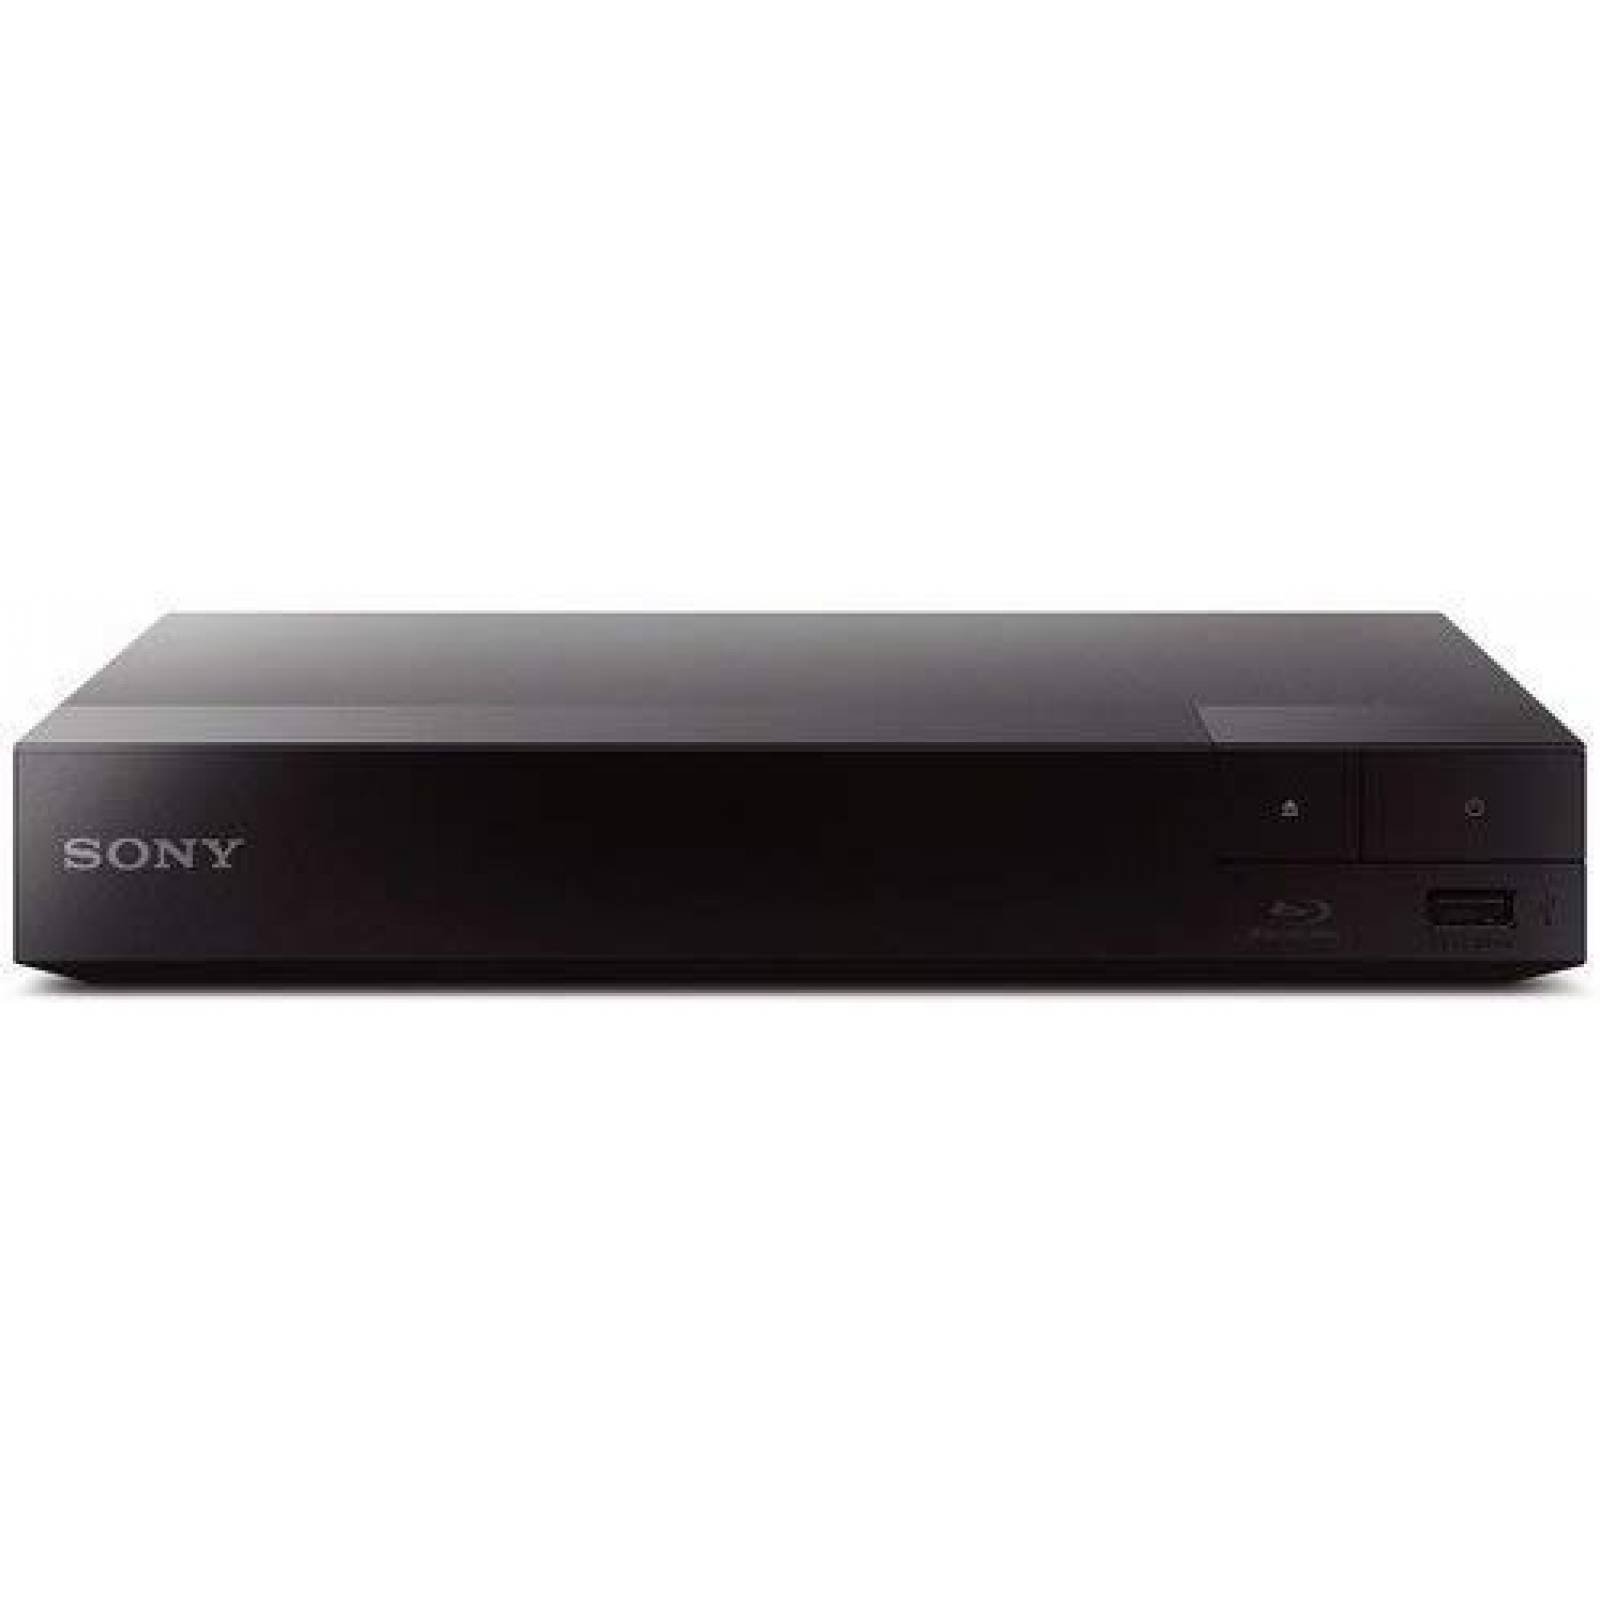 Reproductor de Blu-ray Sony HD con Cable HDMI y WiFi